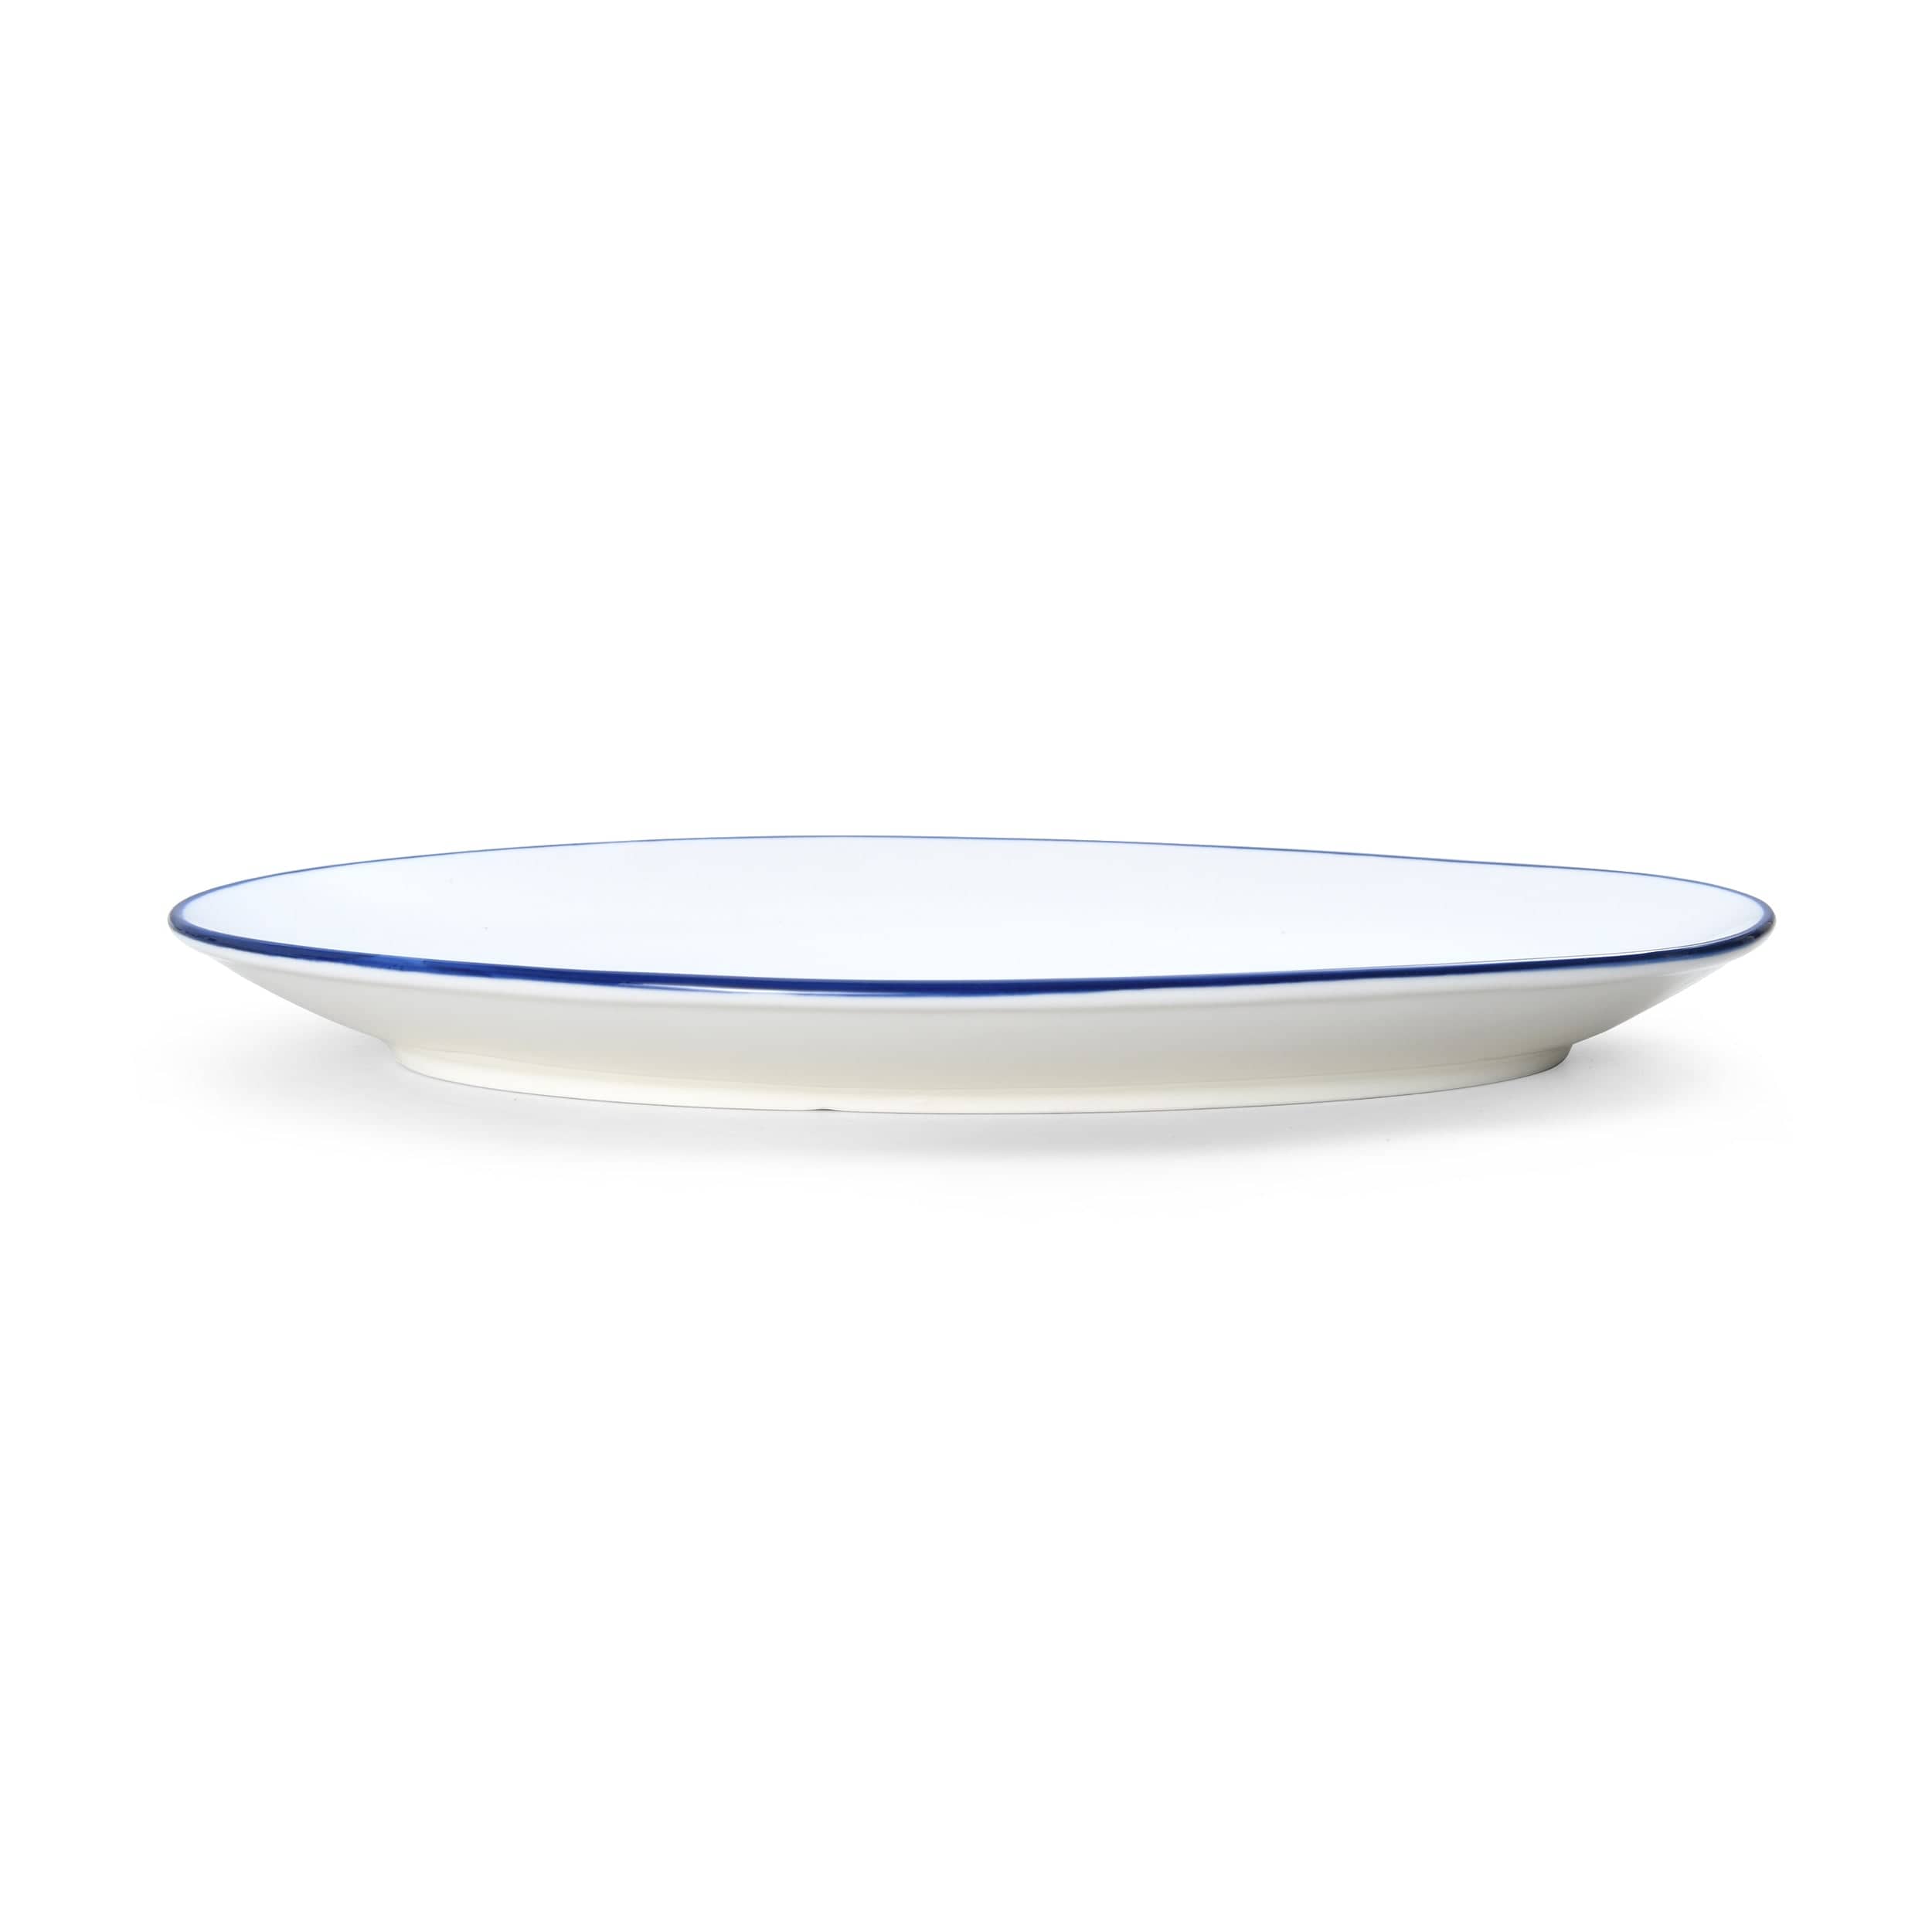 Bistro Pinstripe Porcelain Oval Platter 13x8" Blue Pinstripe #color_blue pinstripe